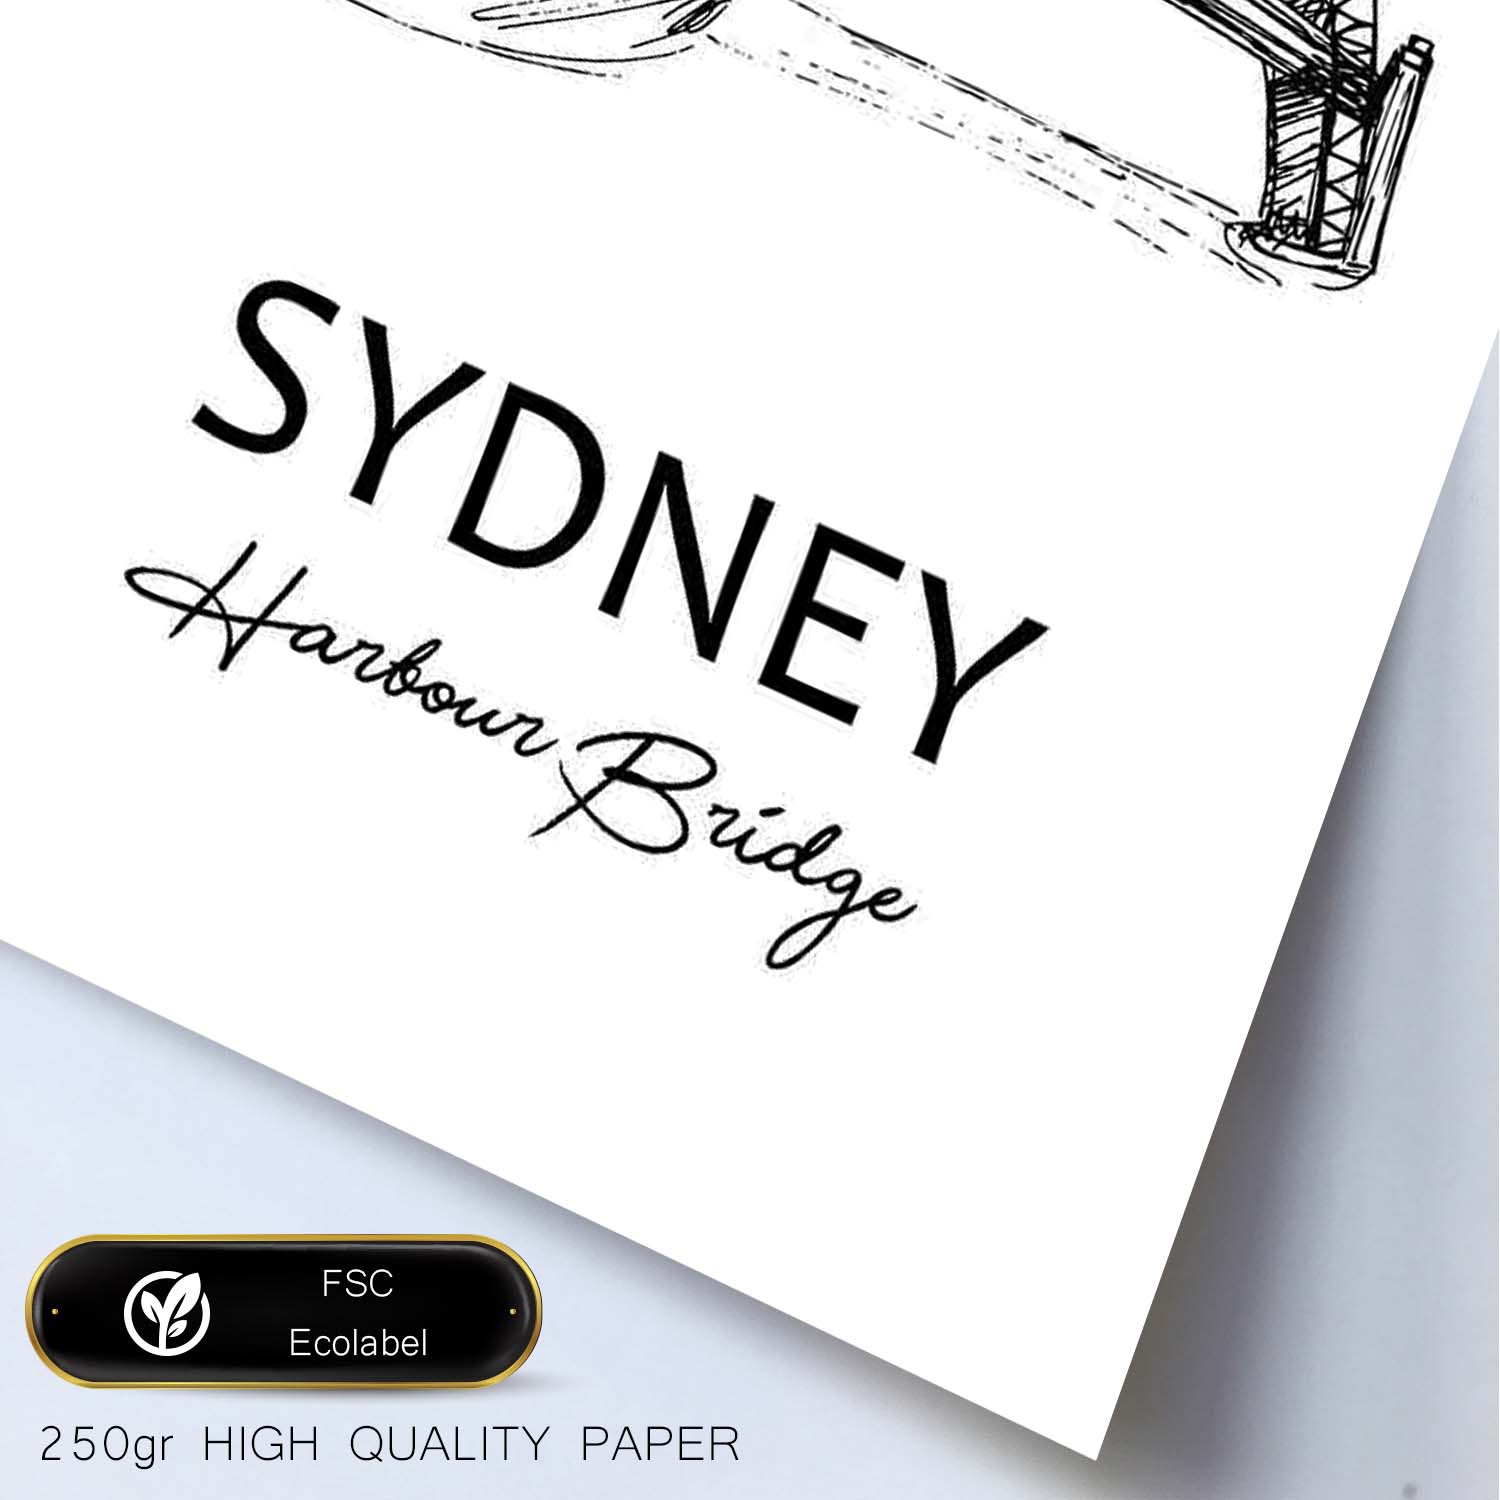 Poster de Sydney - Puente de la bahía. Láminas con monumentos de ciudades.-Artwork-Nacnic-Nacnic Estudio SL